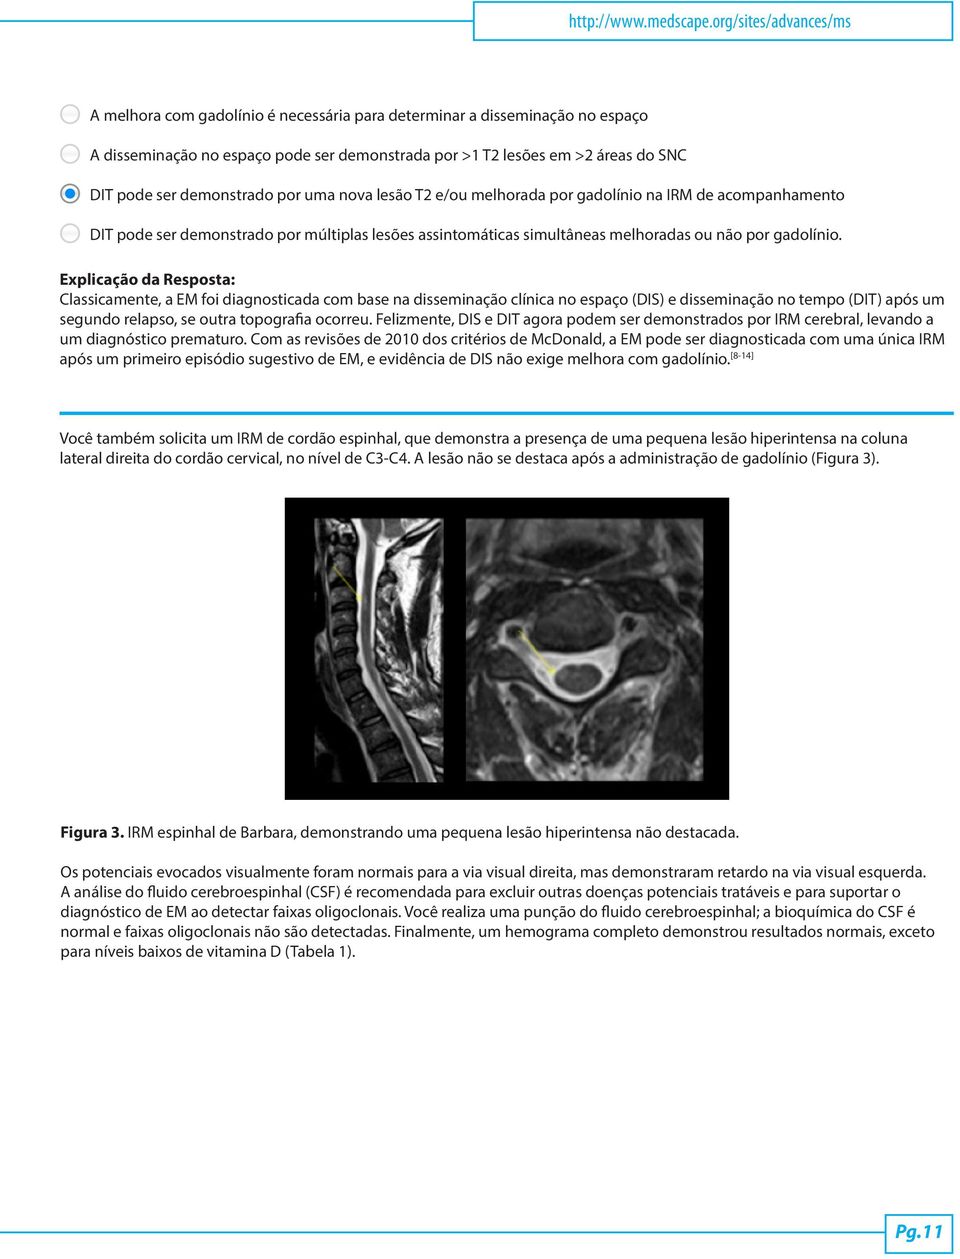 demonstrado por uma nova lesão T2 e/ou melhorada por gadolínio na IRM de acompanhamento DIT pode ser demonstrado por múltiplas lesões assintomáticas simultâneas melhoradas ou não por gadolínio.